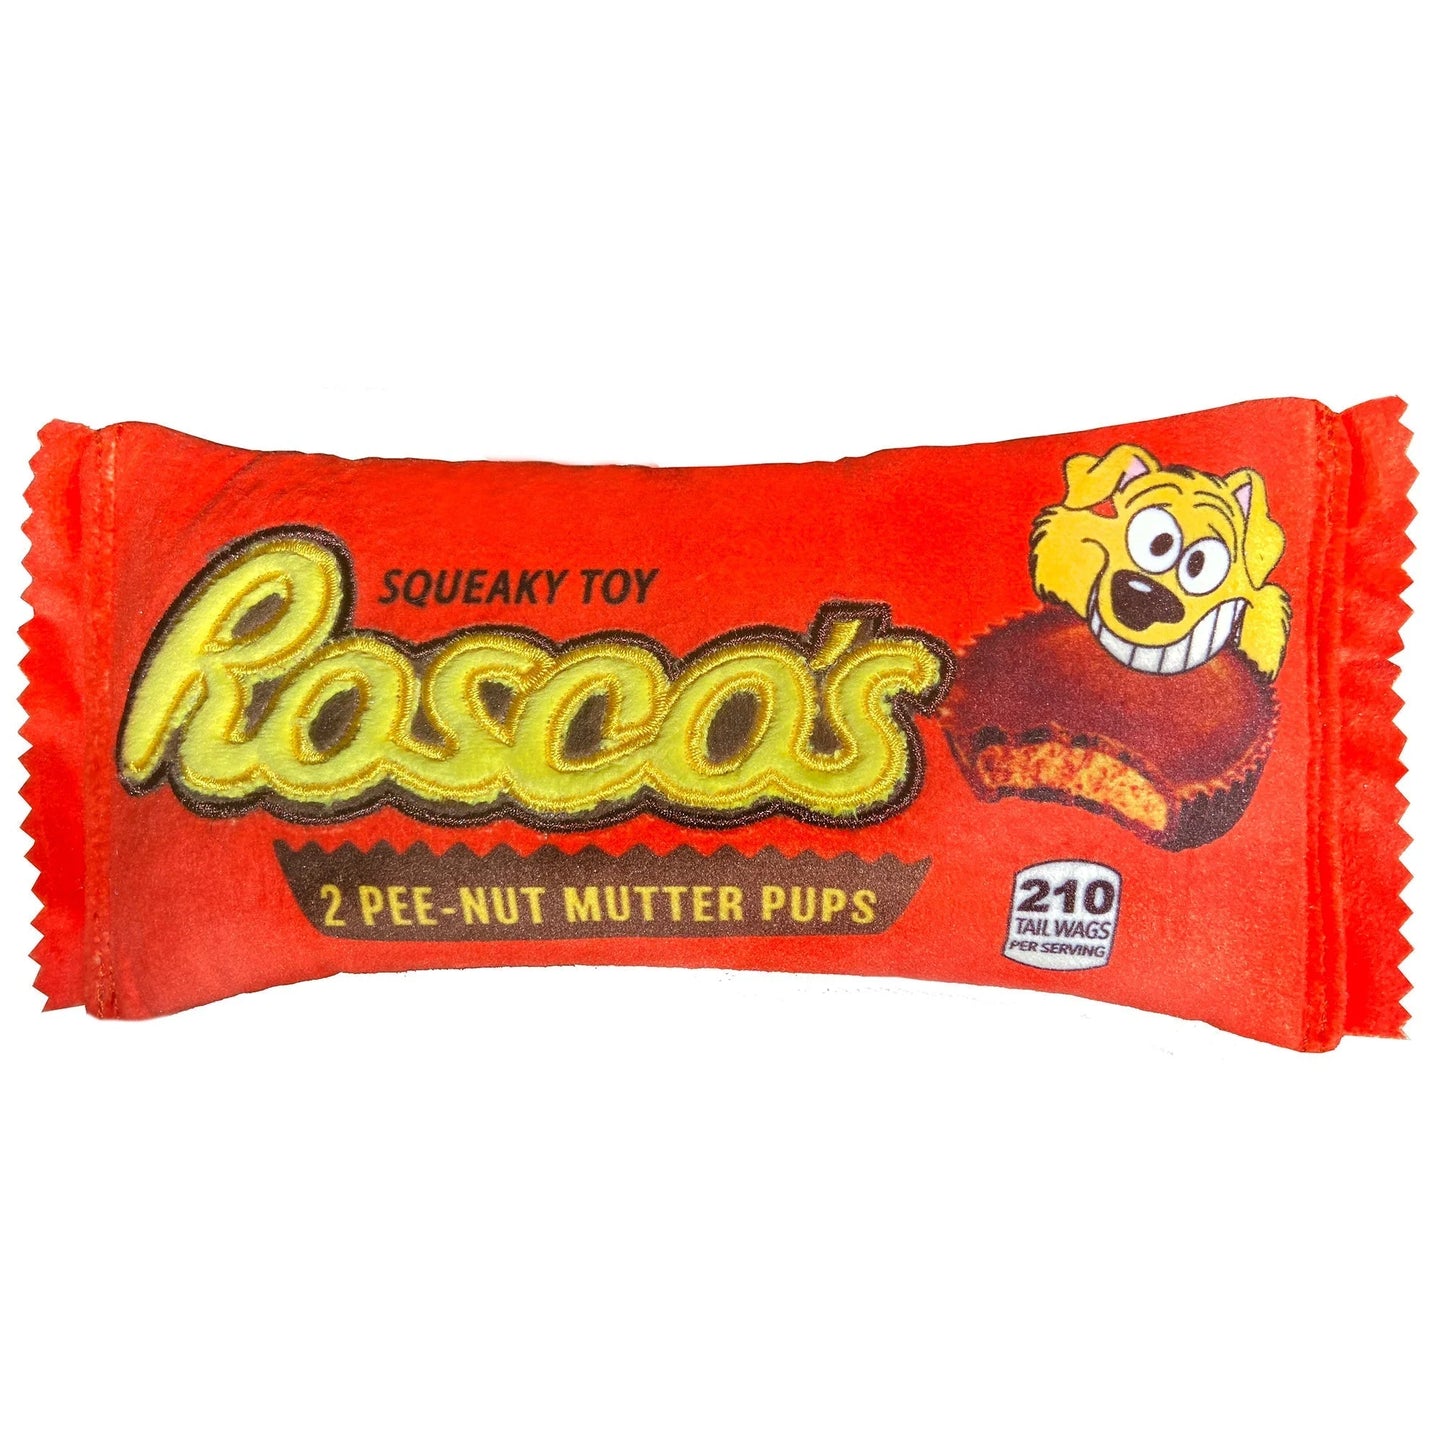 Rosco's Pee-Nut Mutter Pups